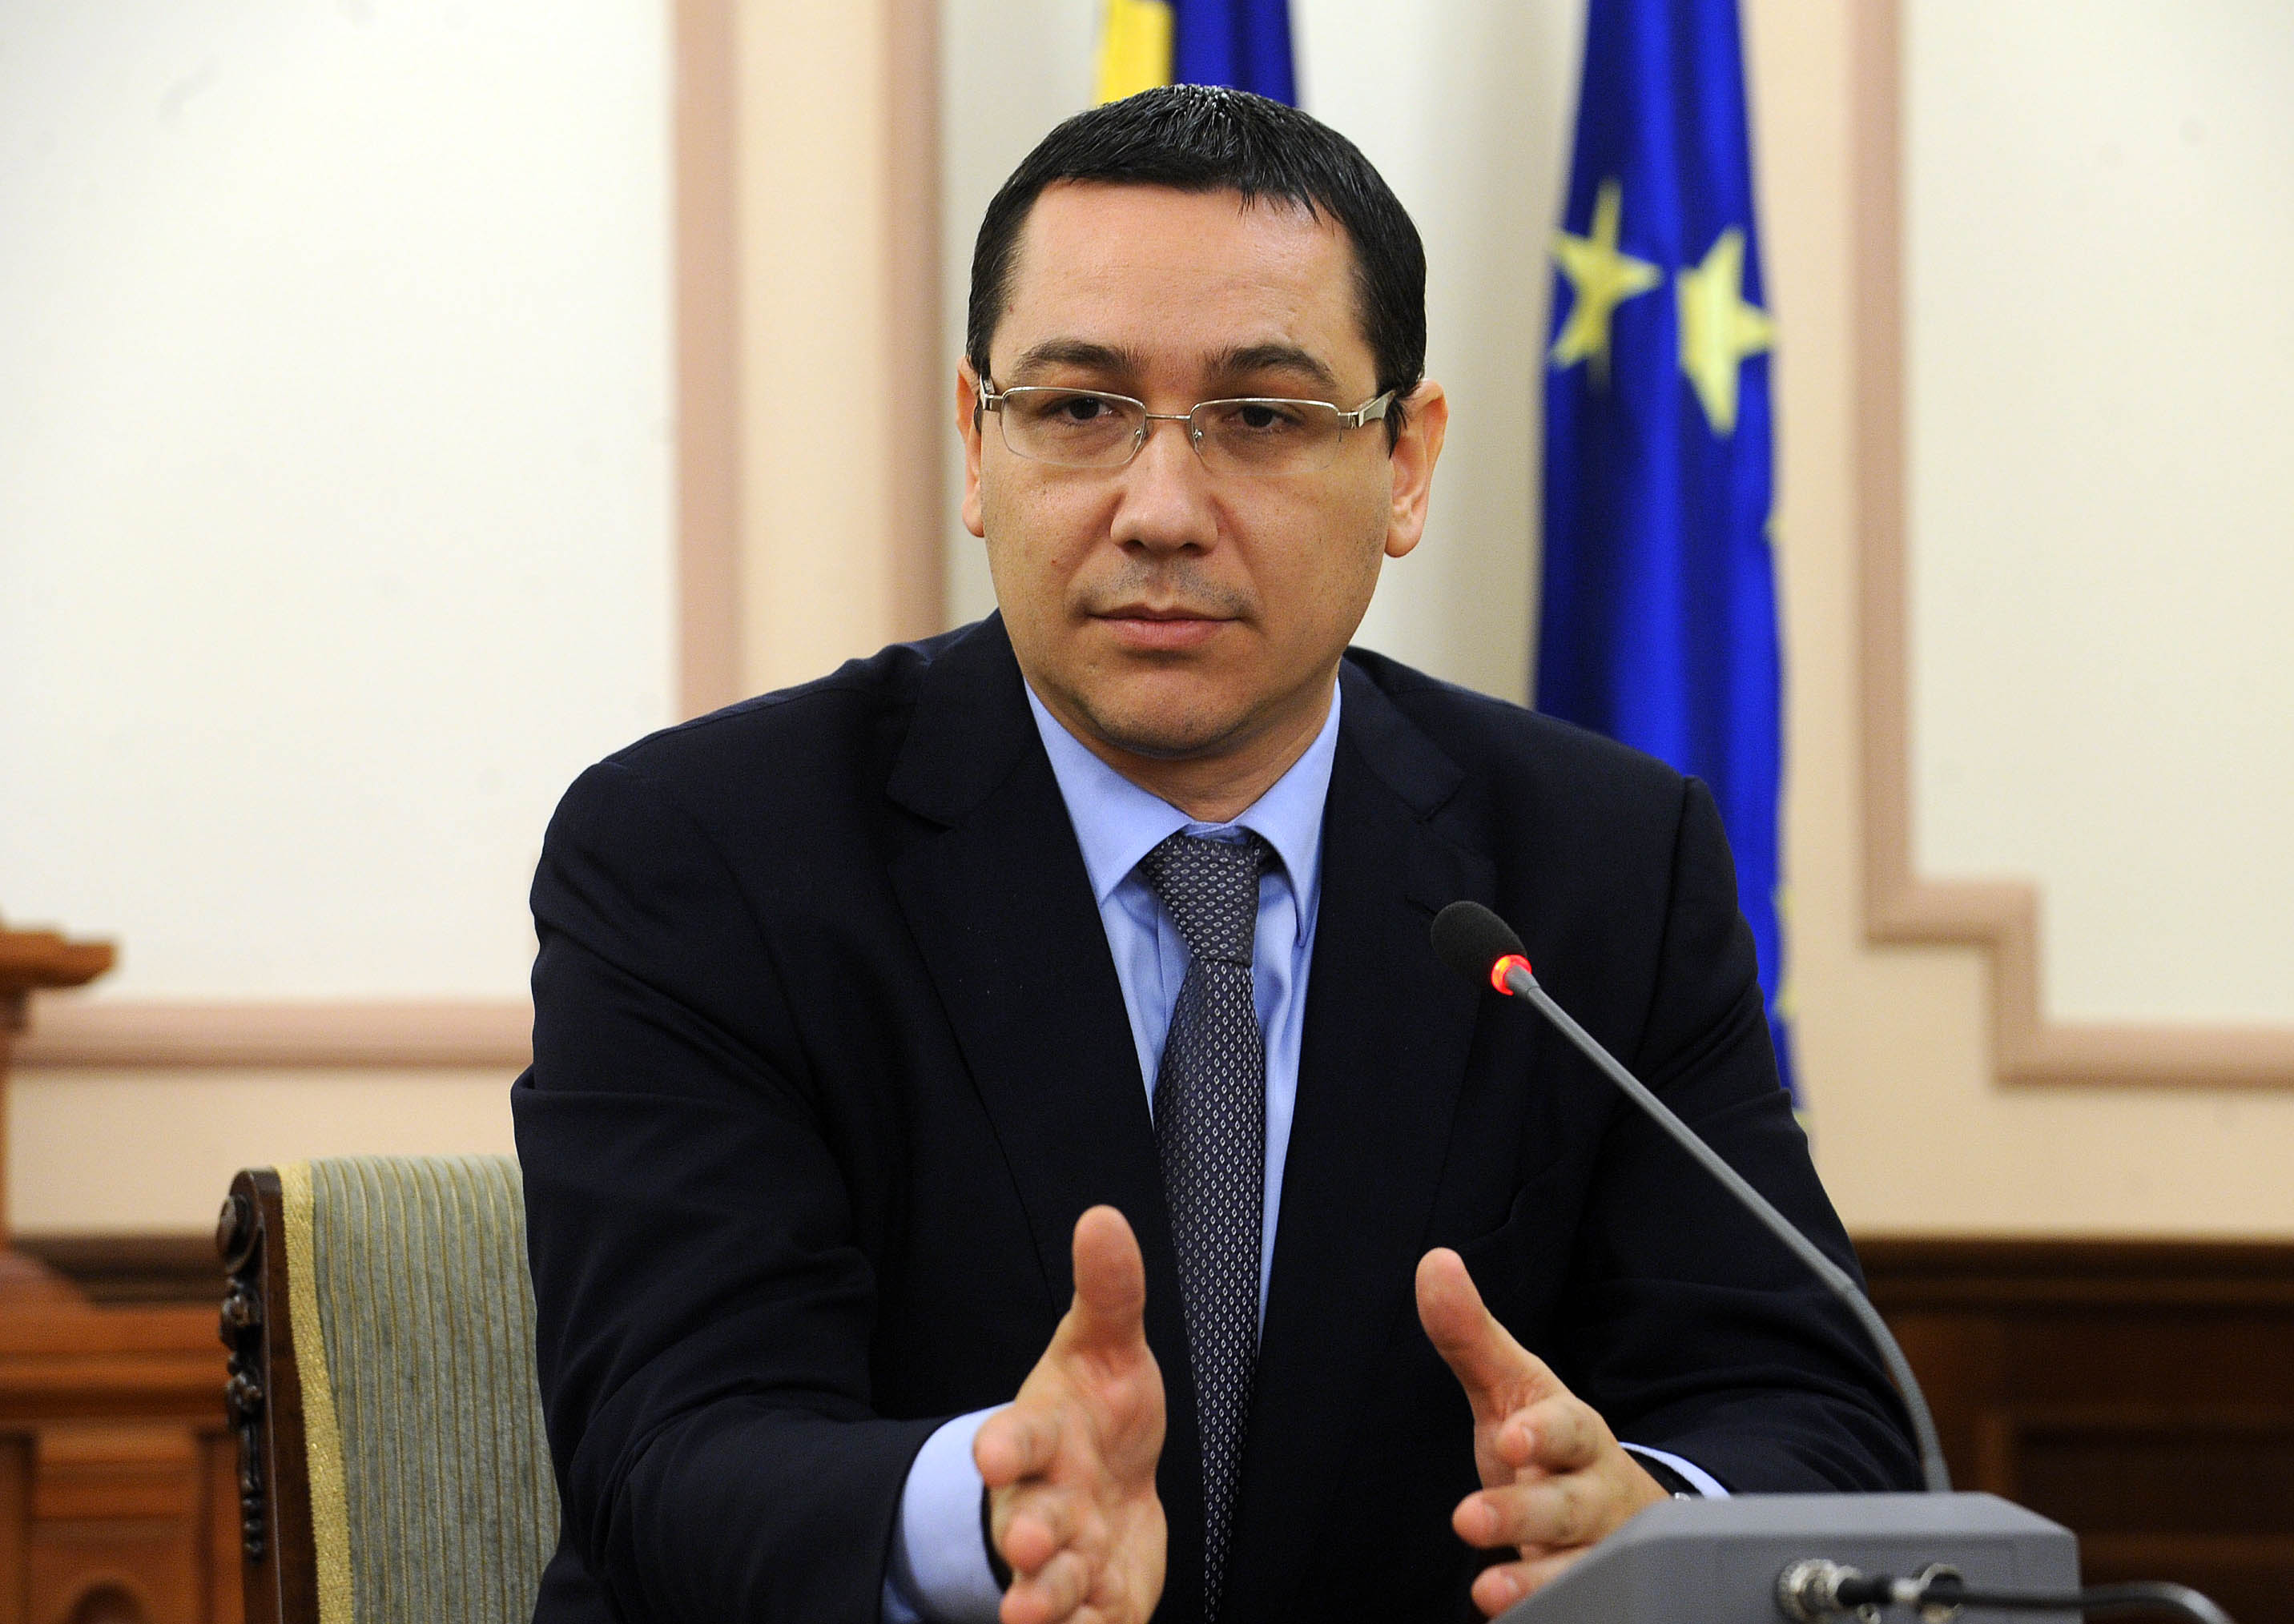 Victor Ponta a sustinut o conferinta de presa de la sediul MAE